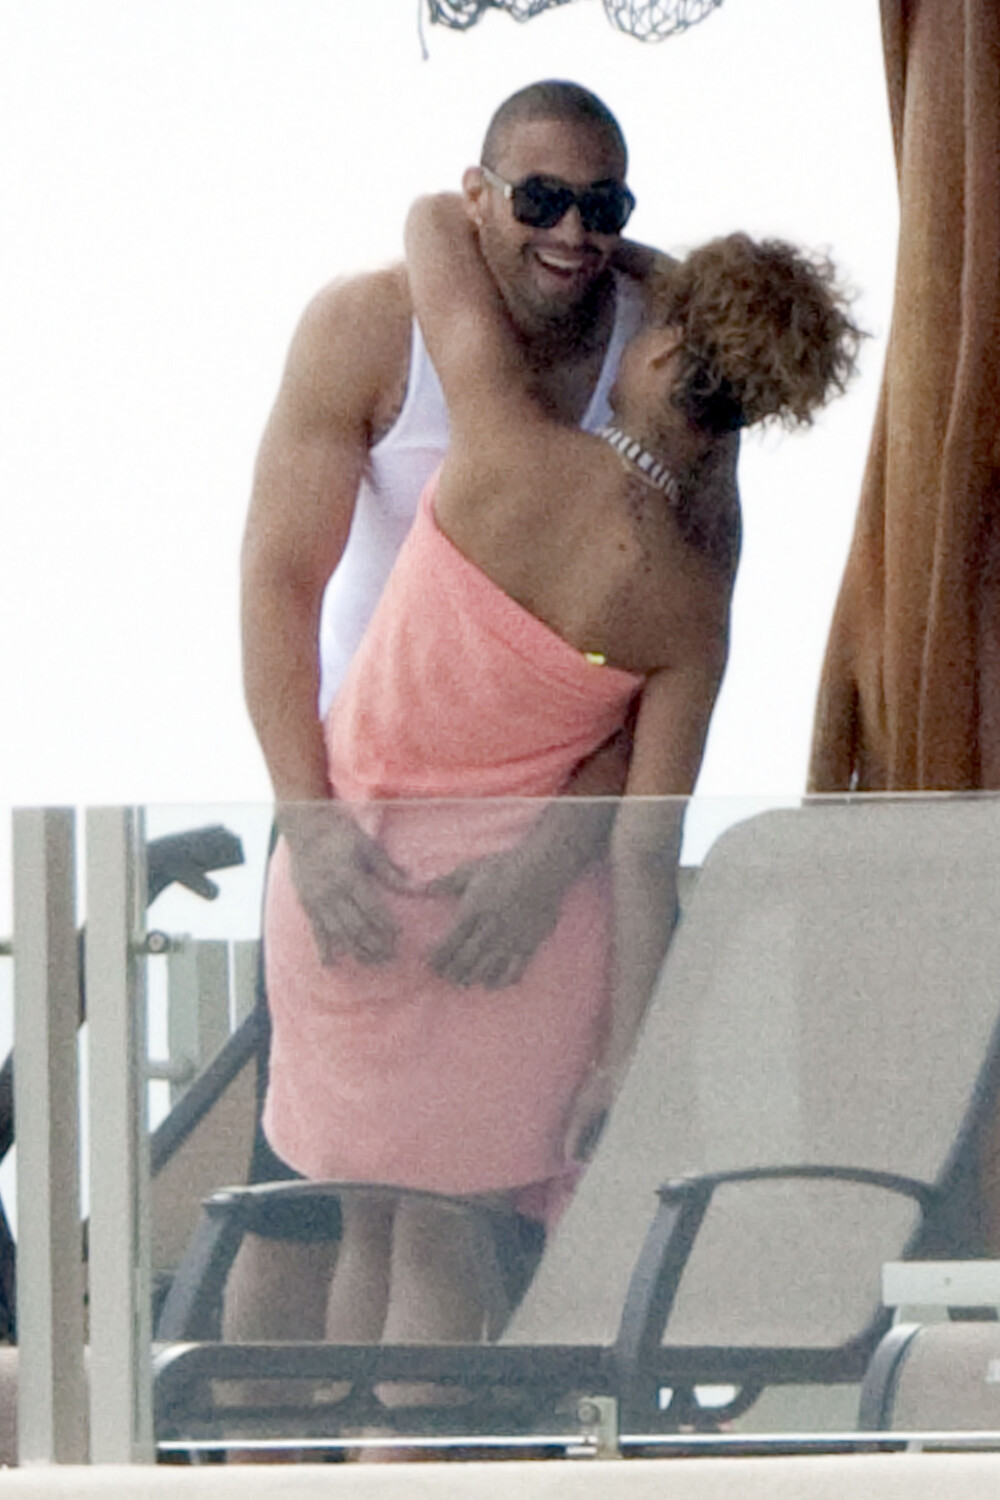 Pe cine saruta Rihanna in piscina?! - Imaginea 3